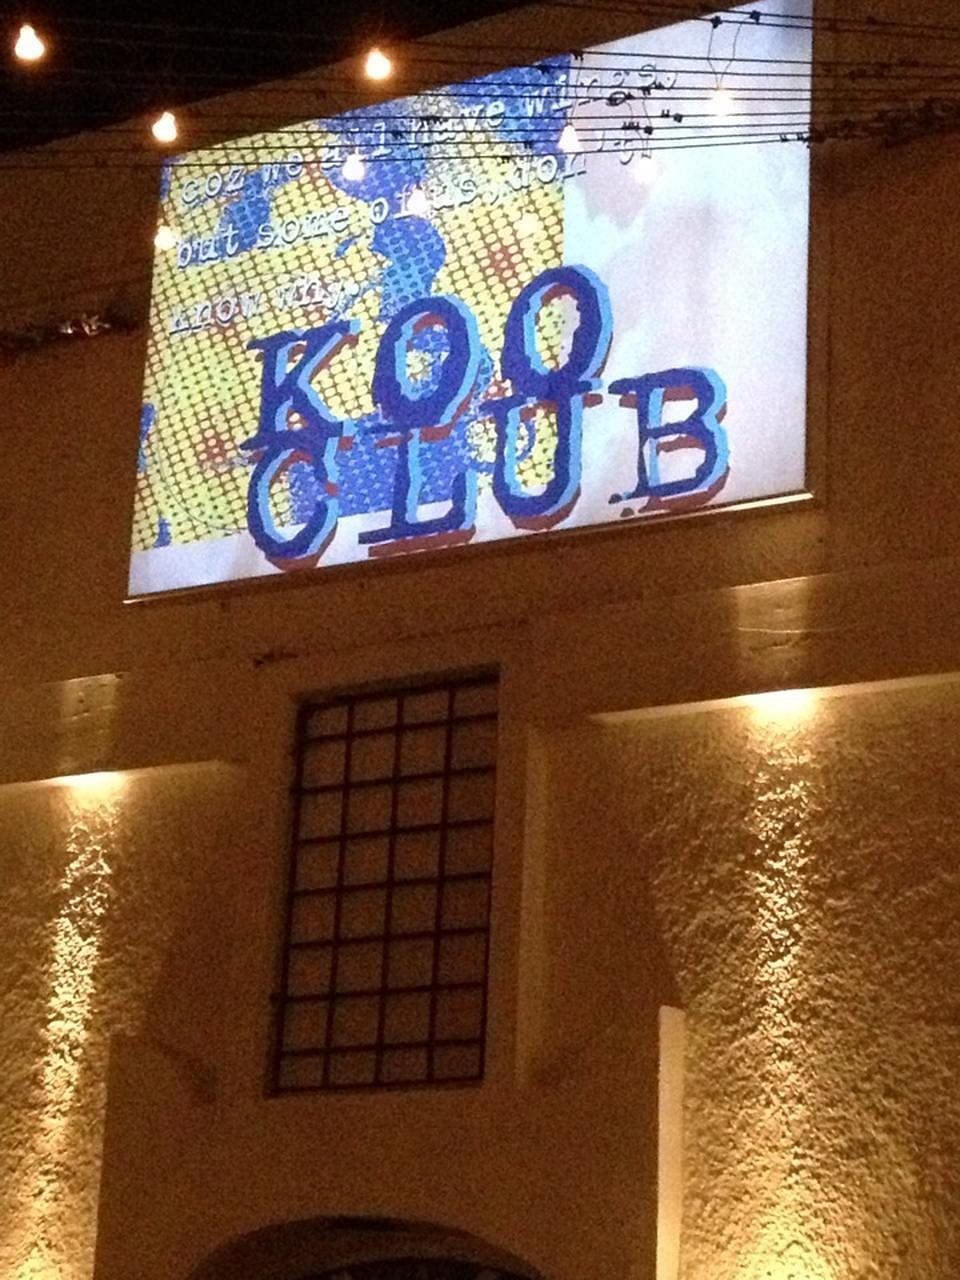 Koo Club in Santorini, Fira Town